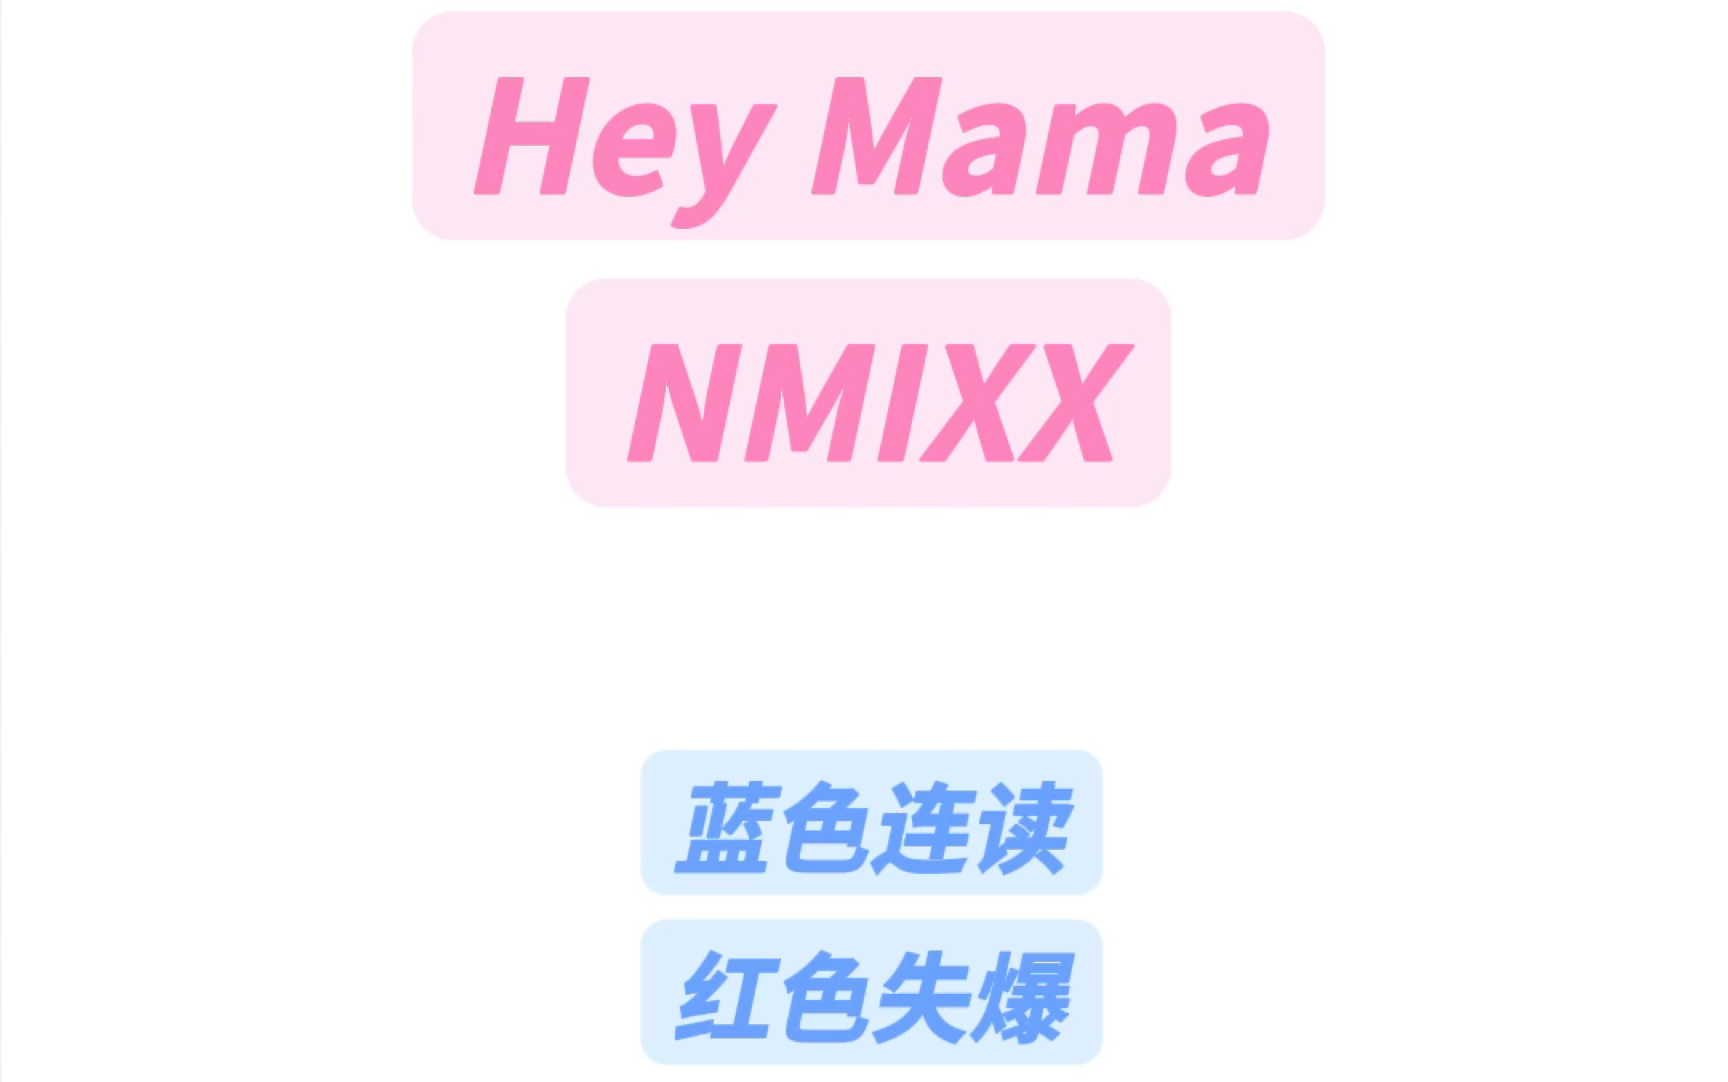 Hey MamaNMIXX纯享版+慢速版音译教学#nmixx #heymama #吴海媛